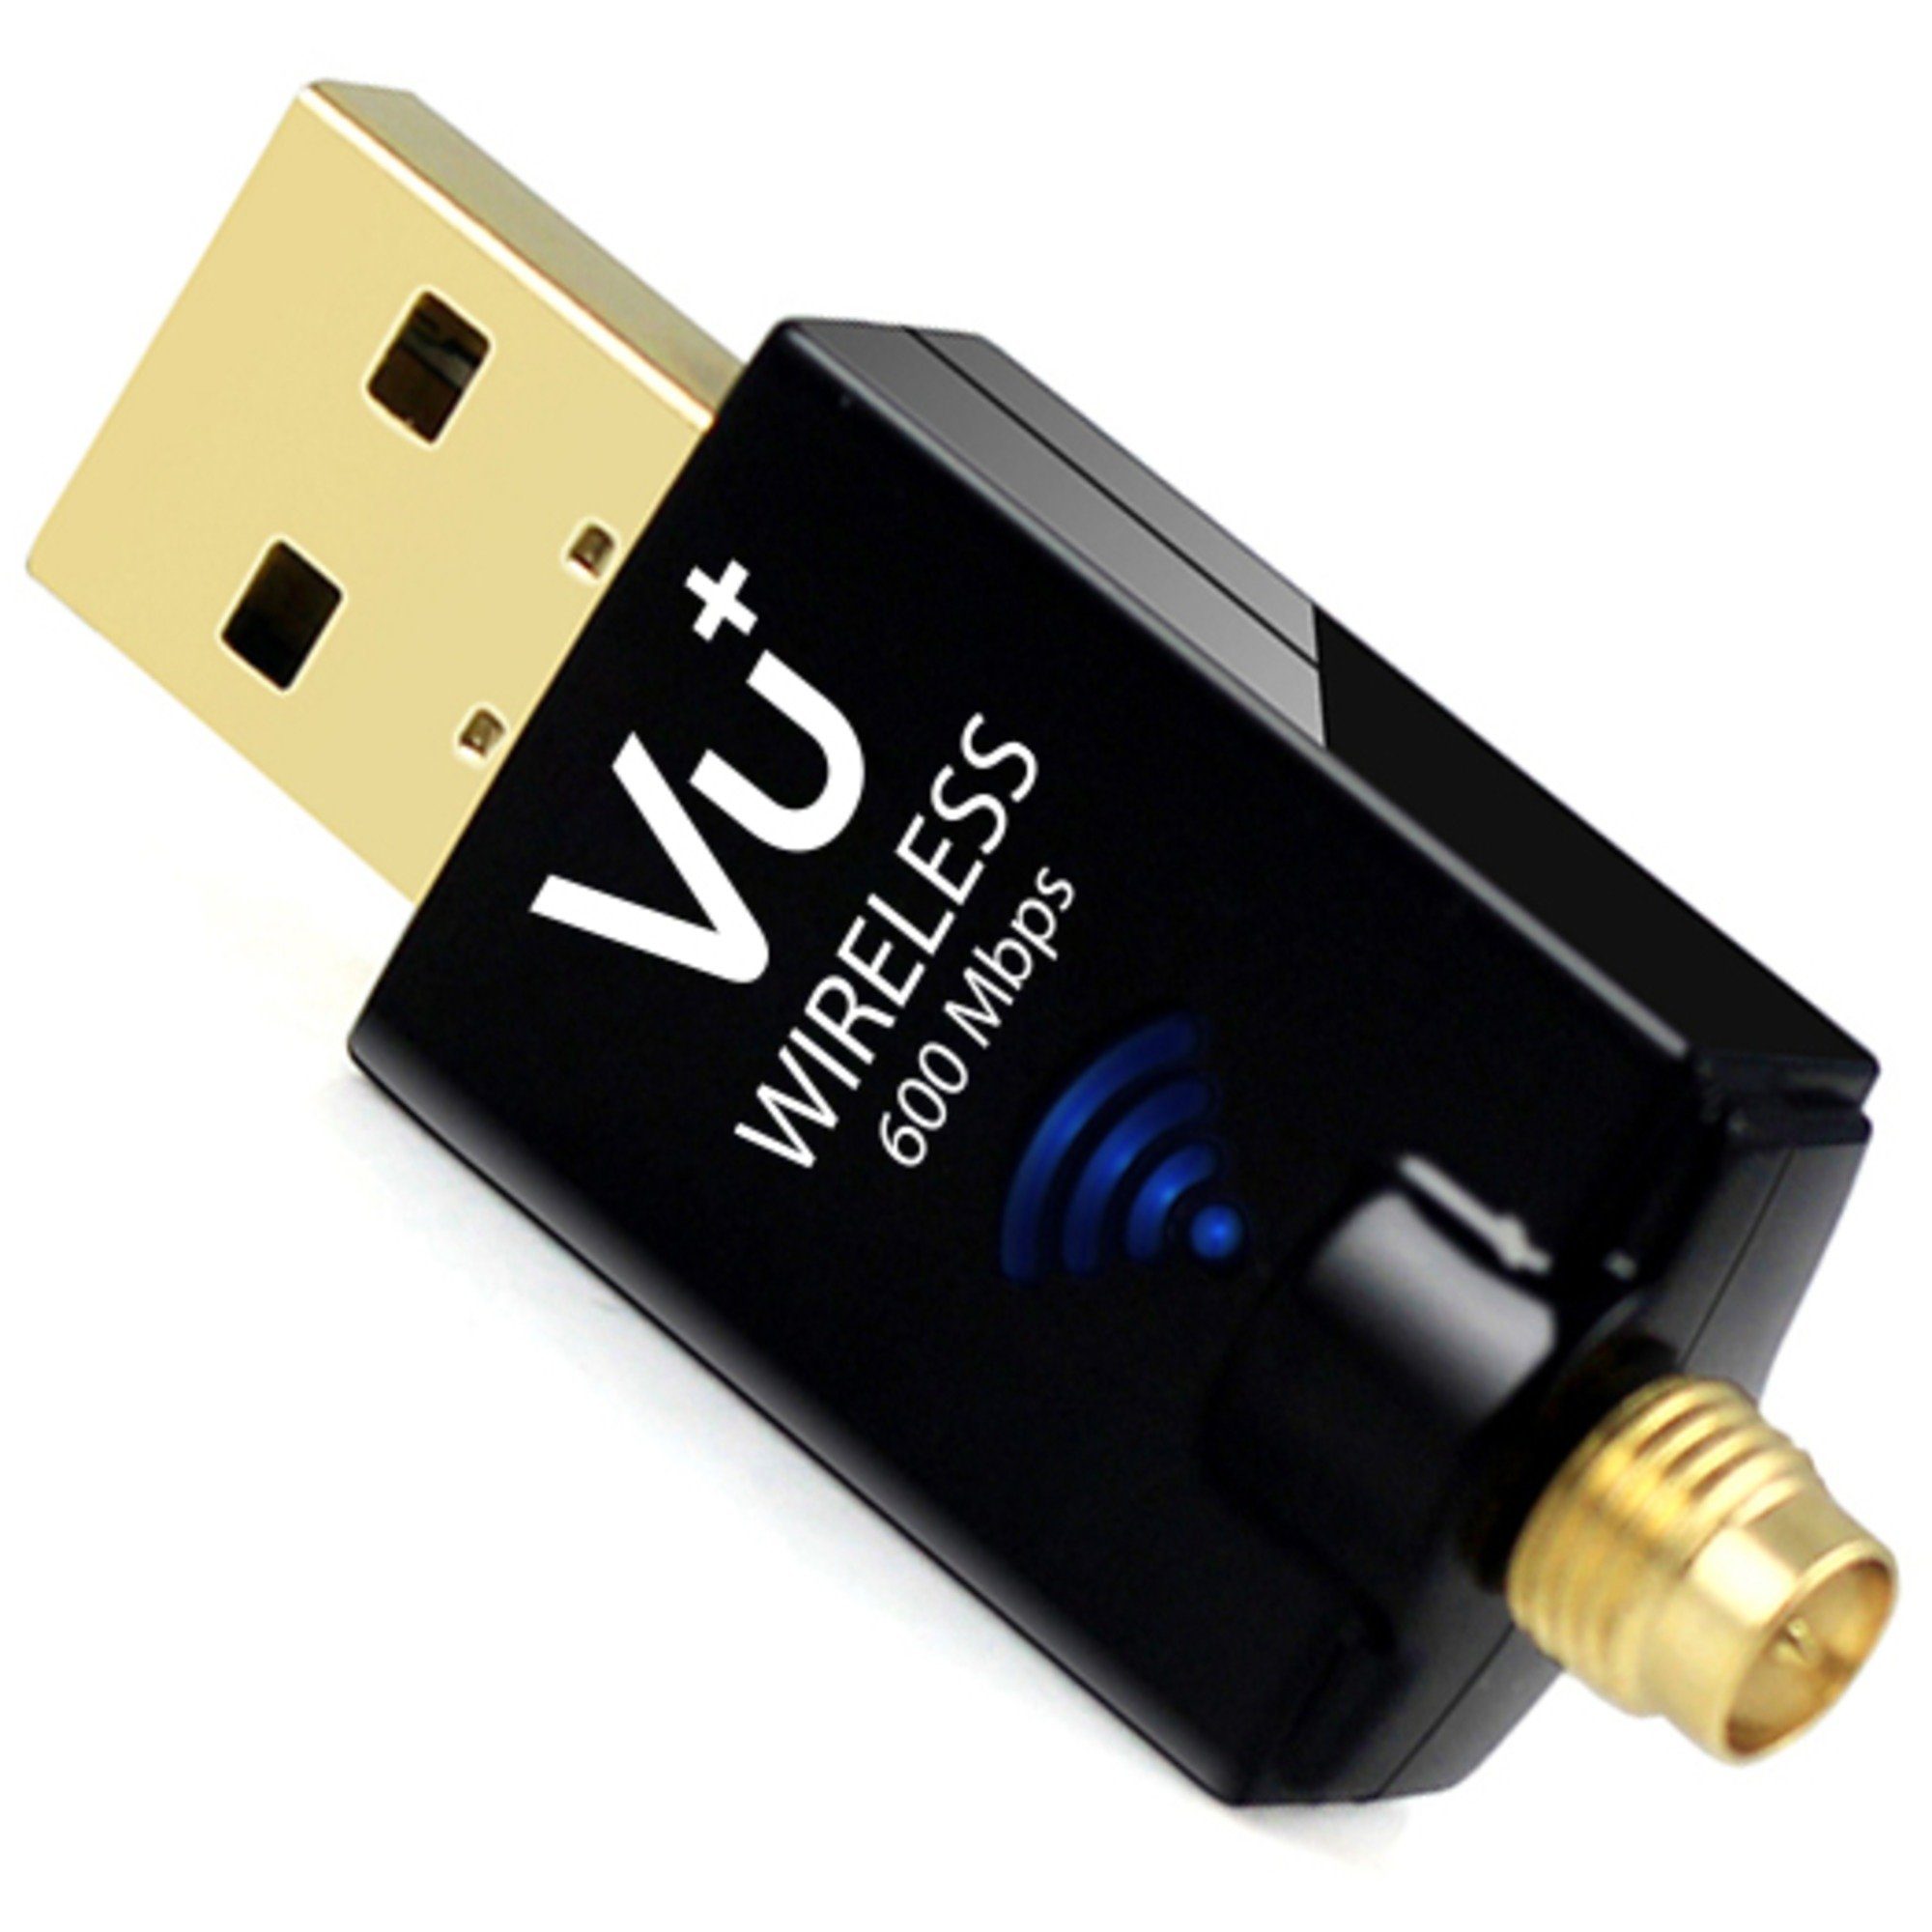 Wireless WLAN-Adapter Adapter, Netzwerk-Adapter VU+ Mbps VU+ USB 600